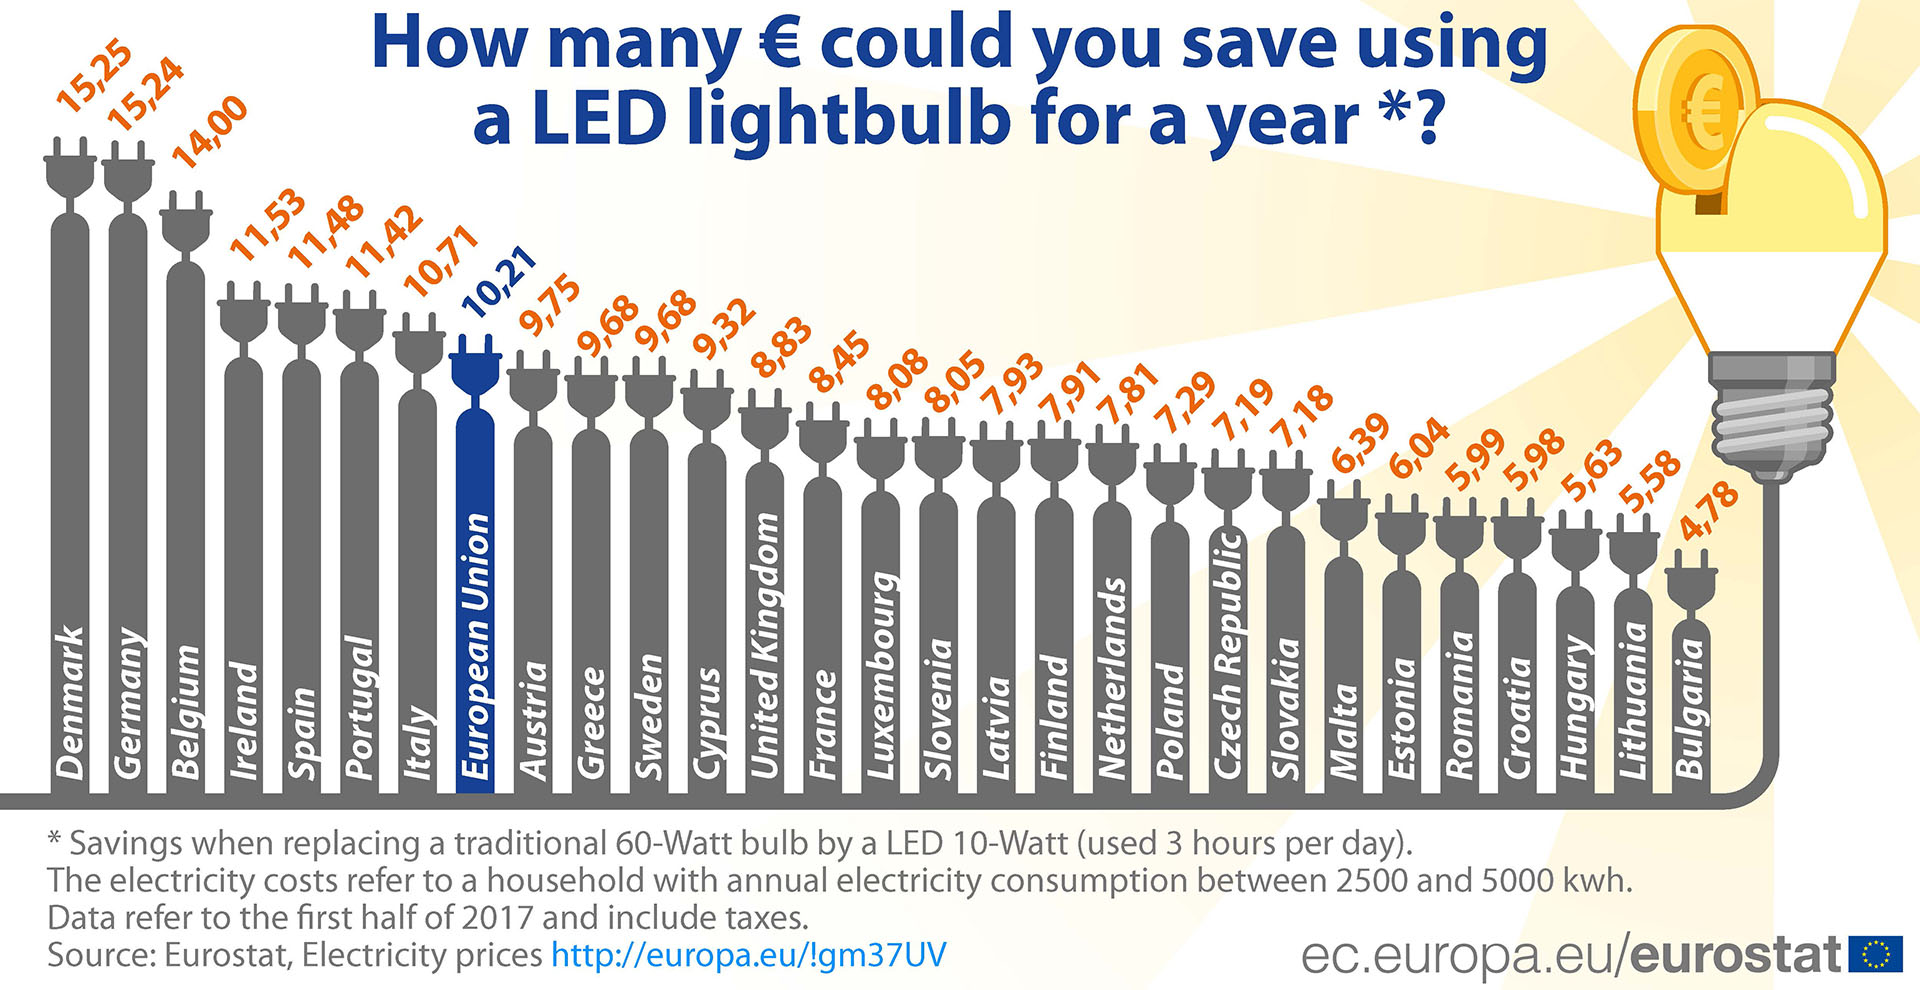 Glühlampen: Verkaufsverbot für 75-Watt-Glühbirnen ab 1. September